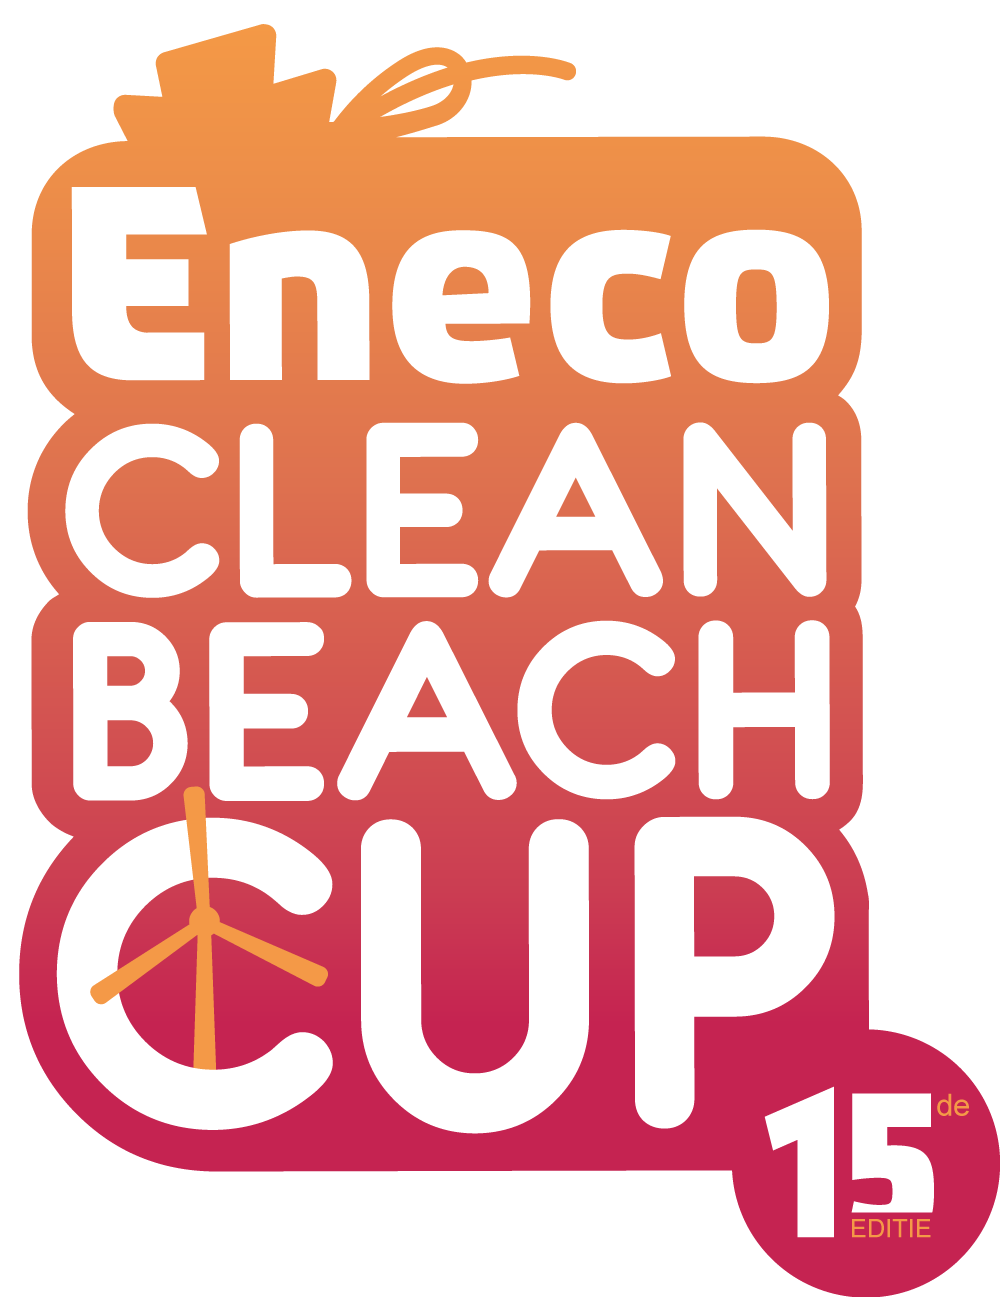 Eneco Clean Beach Cup Logo